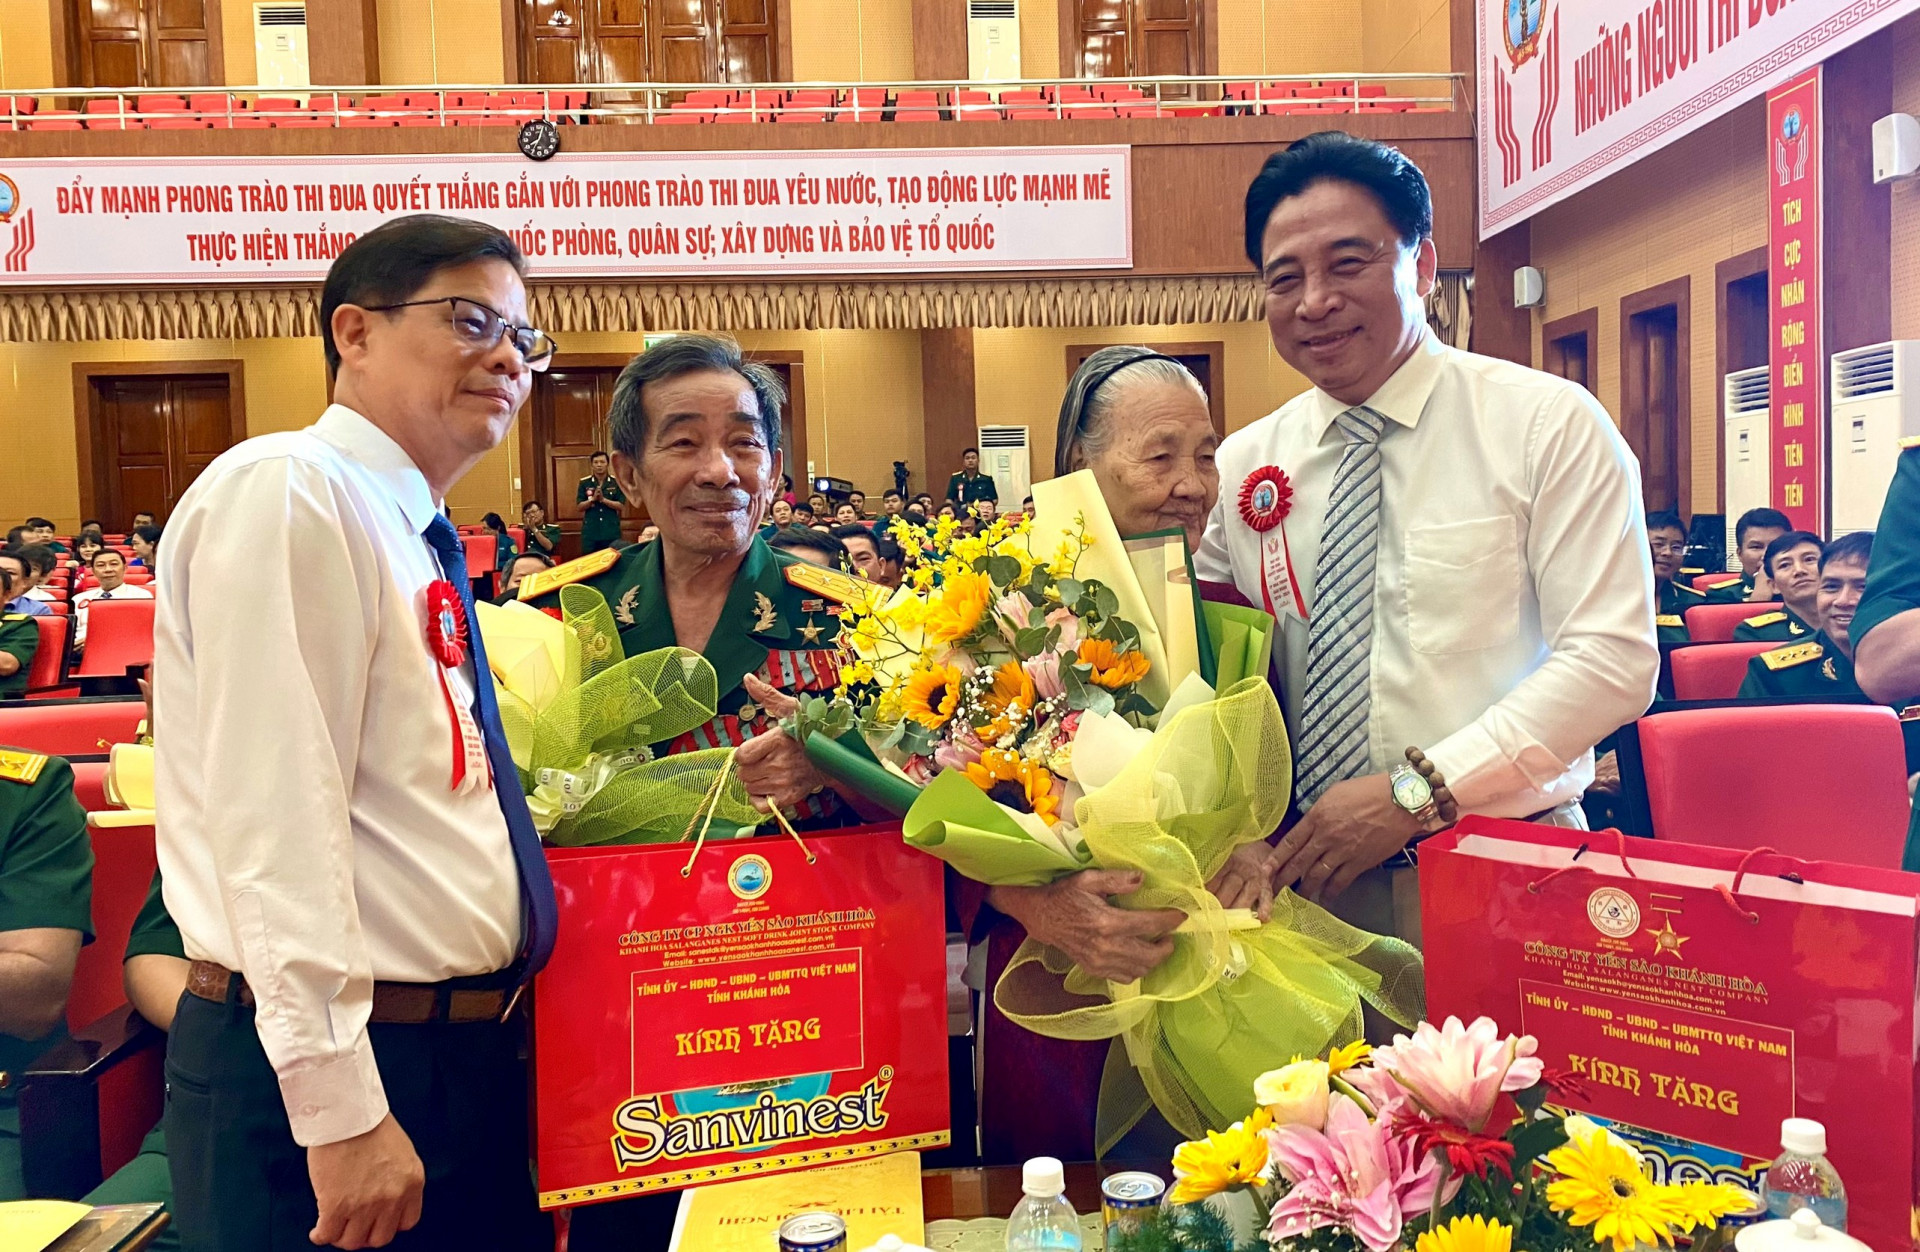 Đồng chí Nguyễn Khắc Toàn và đồng chí Nguyễn Tấn Tuân tặng quà cho Mẹ Việt Nam Anh hùng và Anh hùng lực lượng vũ trang nhân dân tại đại hội.